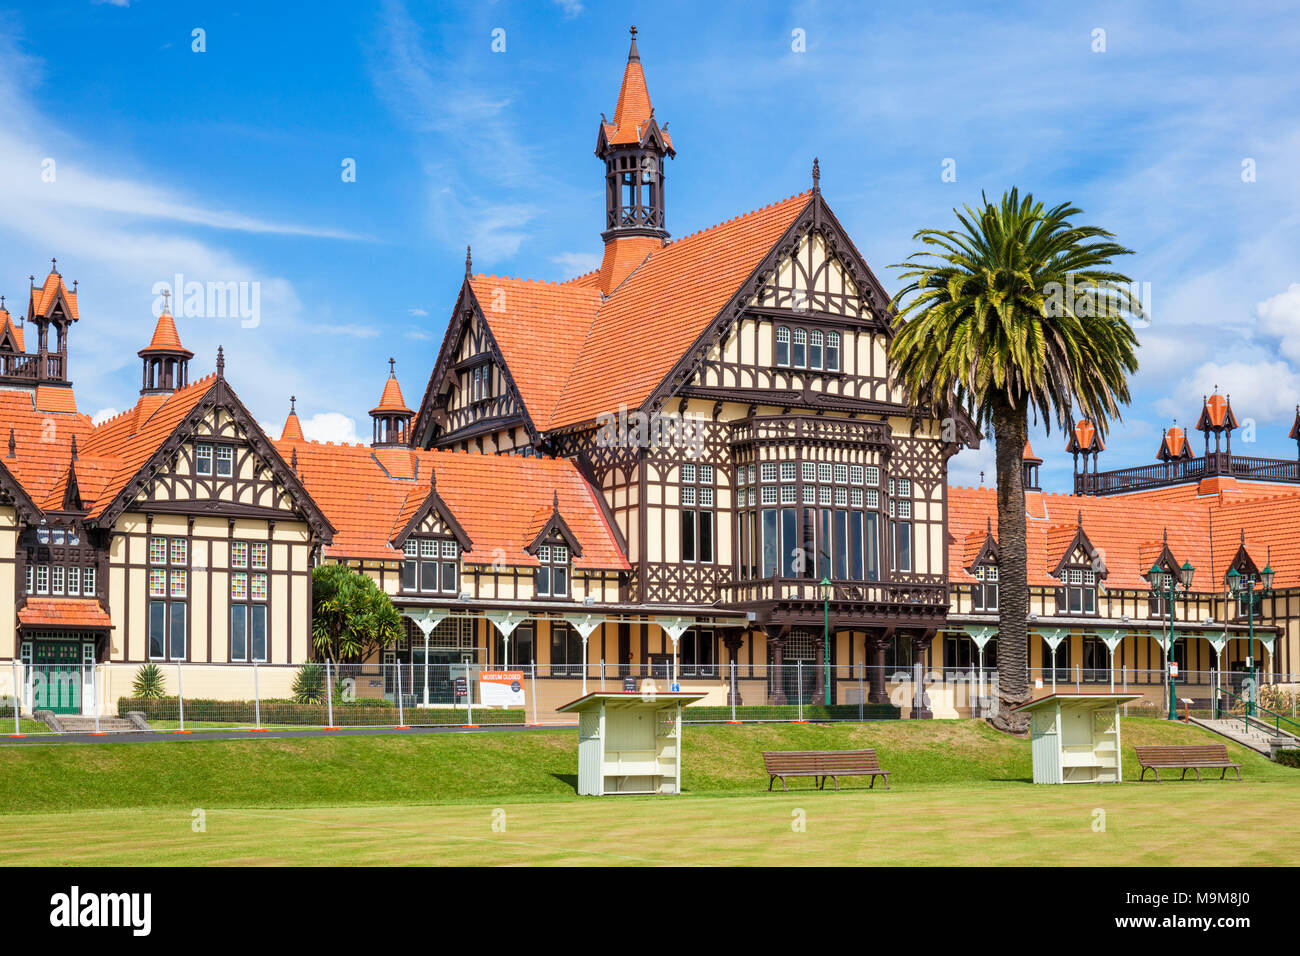 Nouvelle zélande Rotorua Nouvelle zélande Rotorua Musée de style tudor jardins du gouvernement de l'île du nord de la ville de Rotorua nouvelle zélande Banque D'Images